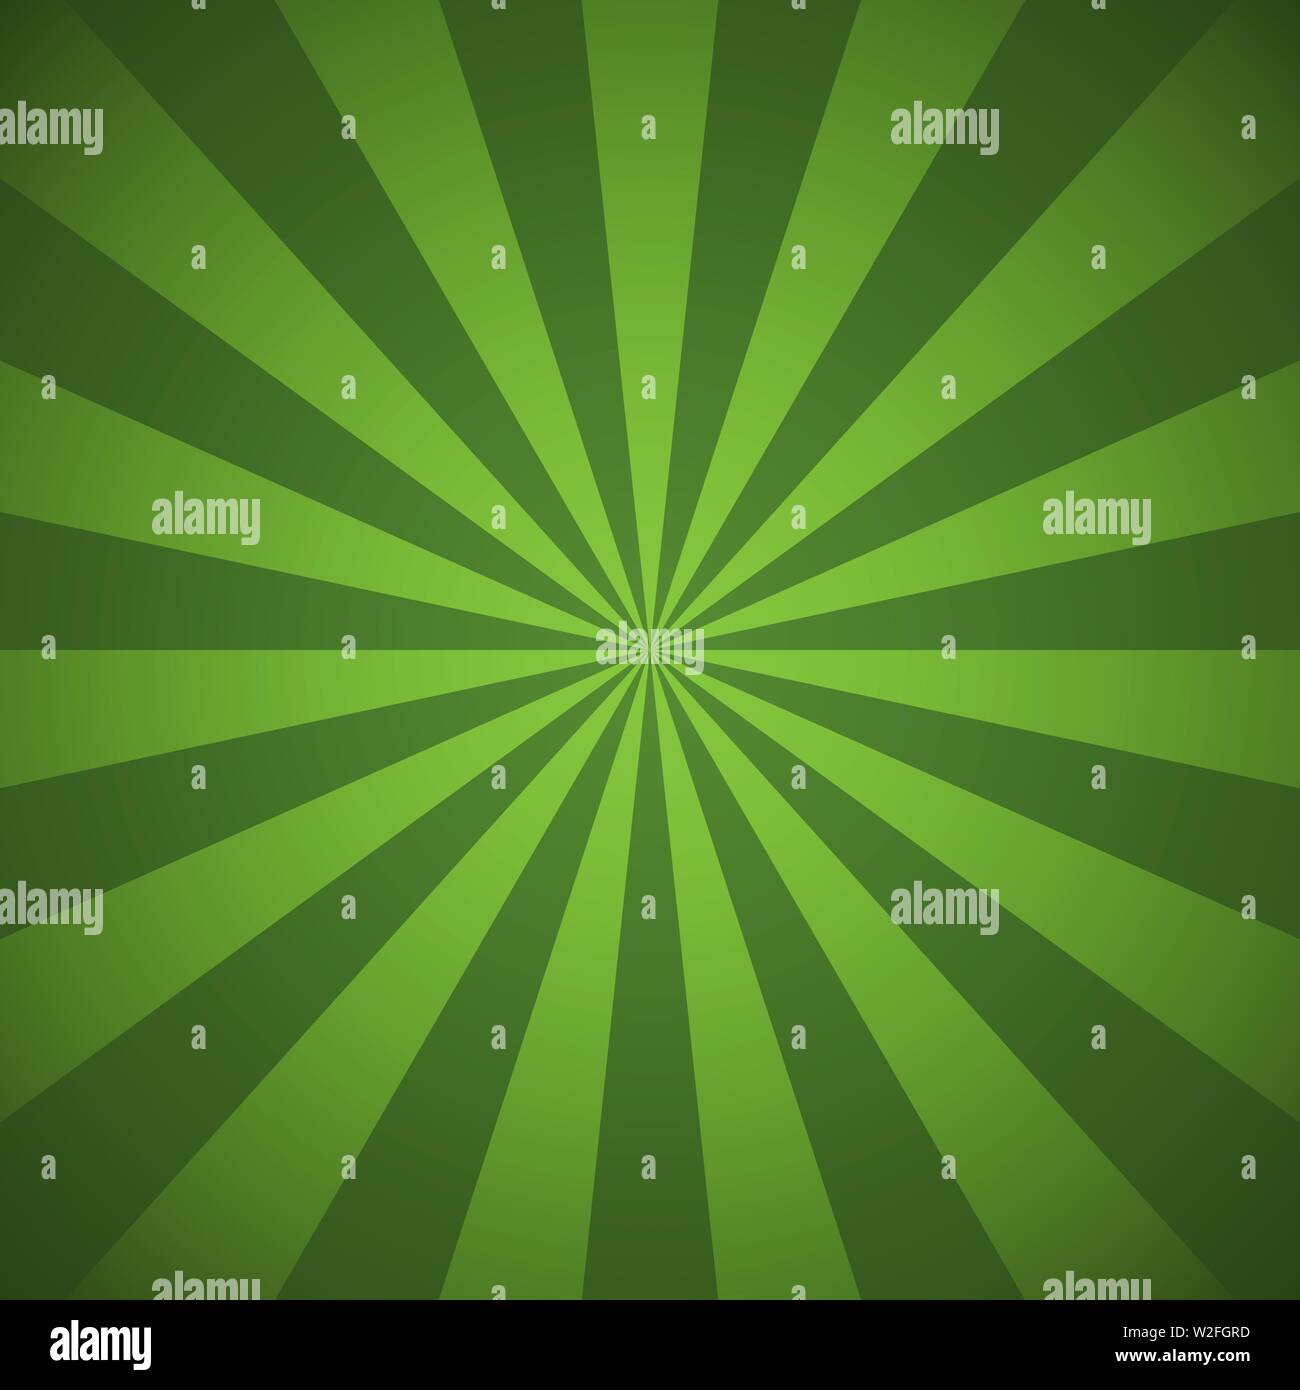 Grüne Balken und Strahlen abstract Vector Illustration radiale Linien Hintergrund Stock Vektor